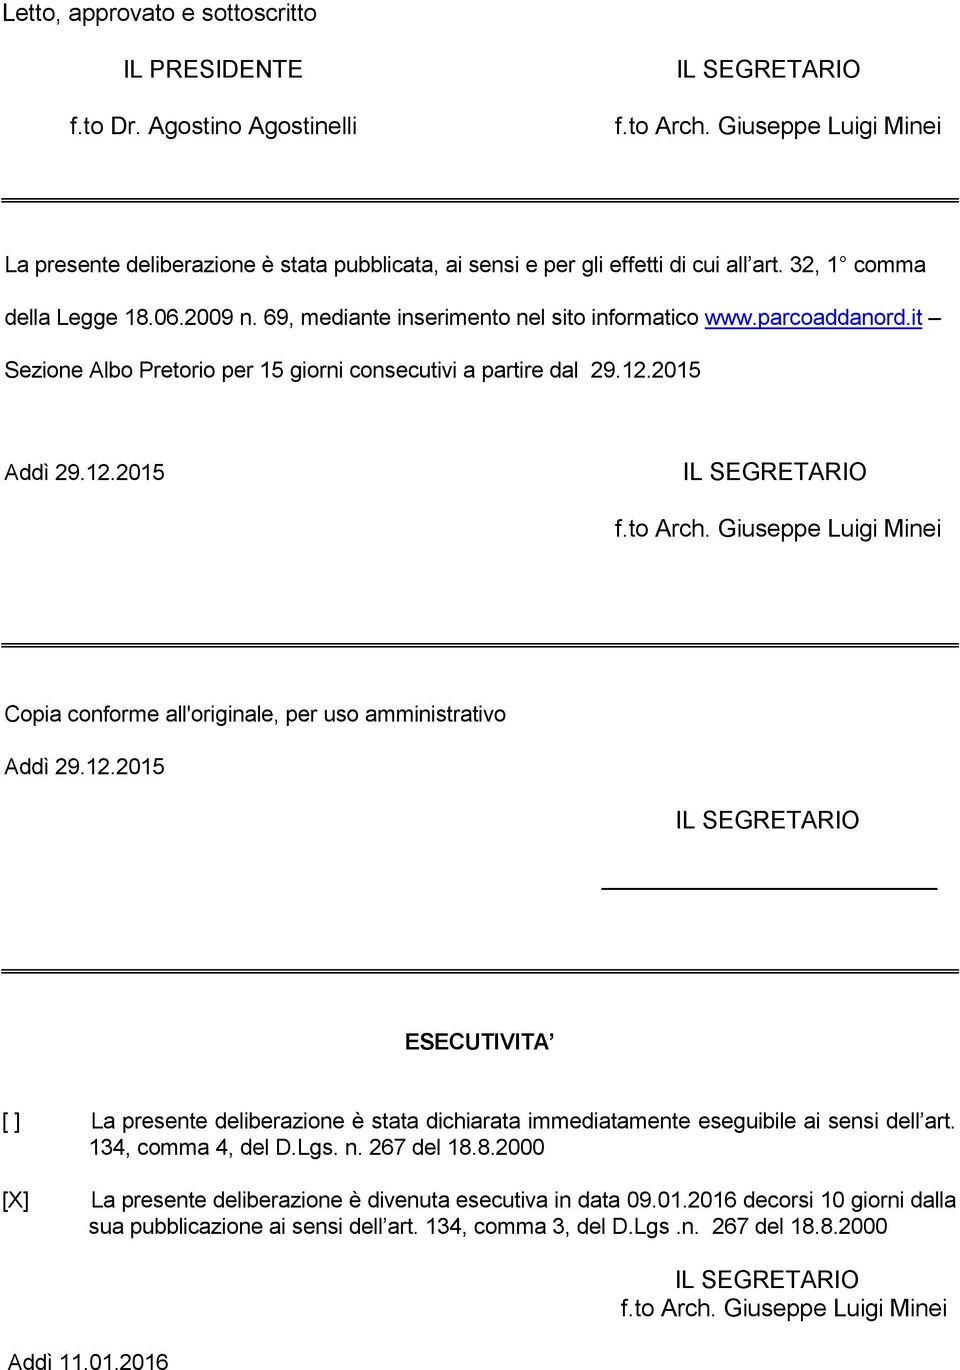 parcoaddanord.it Sezione Albo Pretorio per 15 giorni consecutivi a partire dal 29.12.2015 Addì 29.12.2015 IL SEGRETARIO f.to Arch.